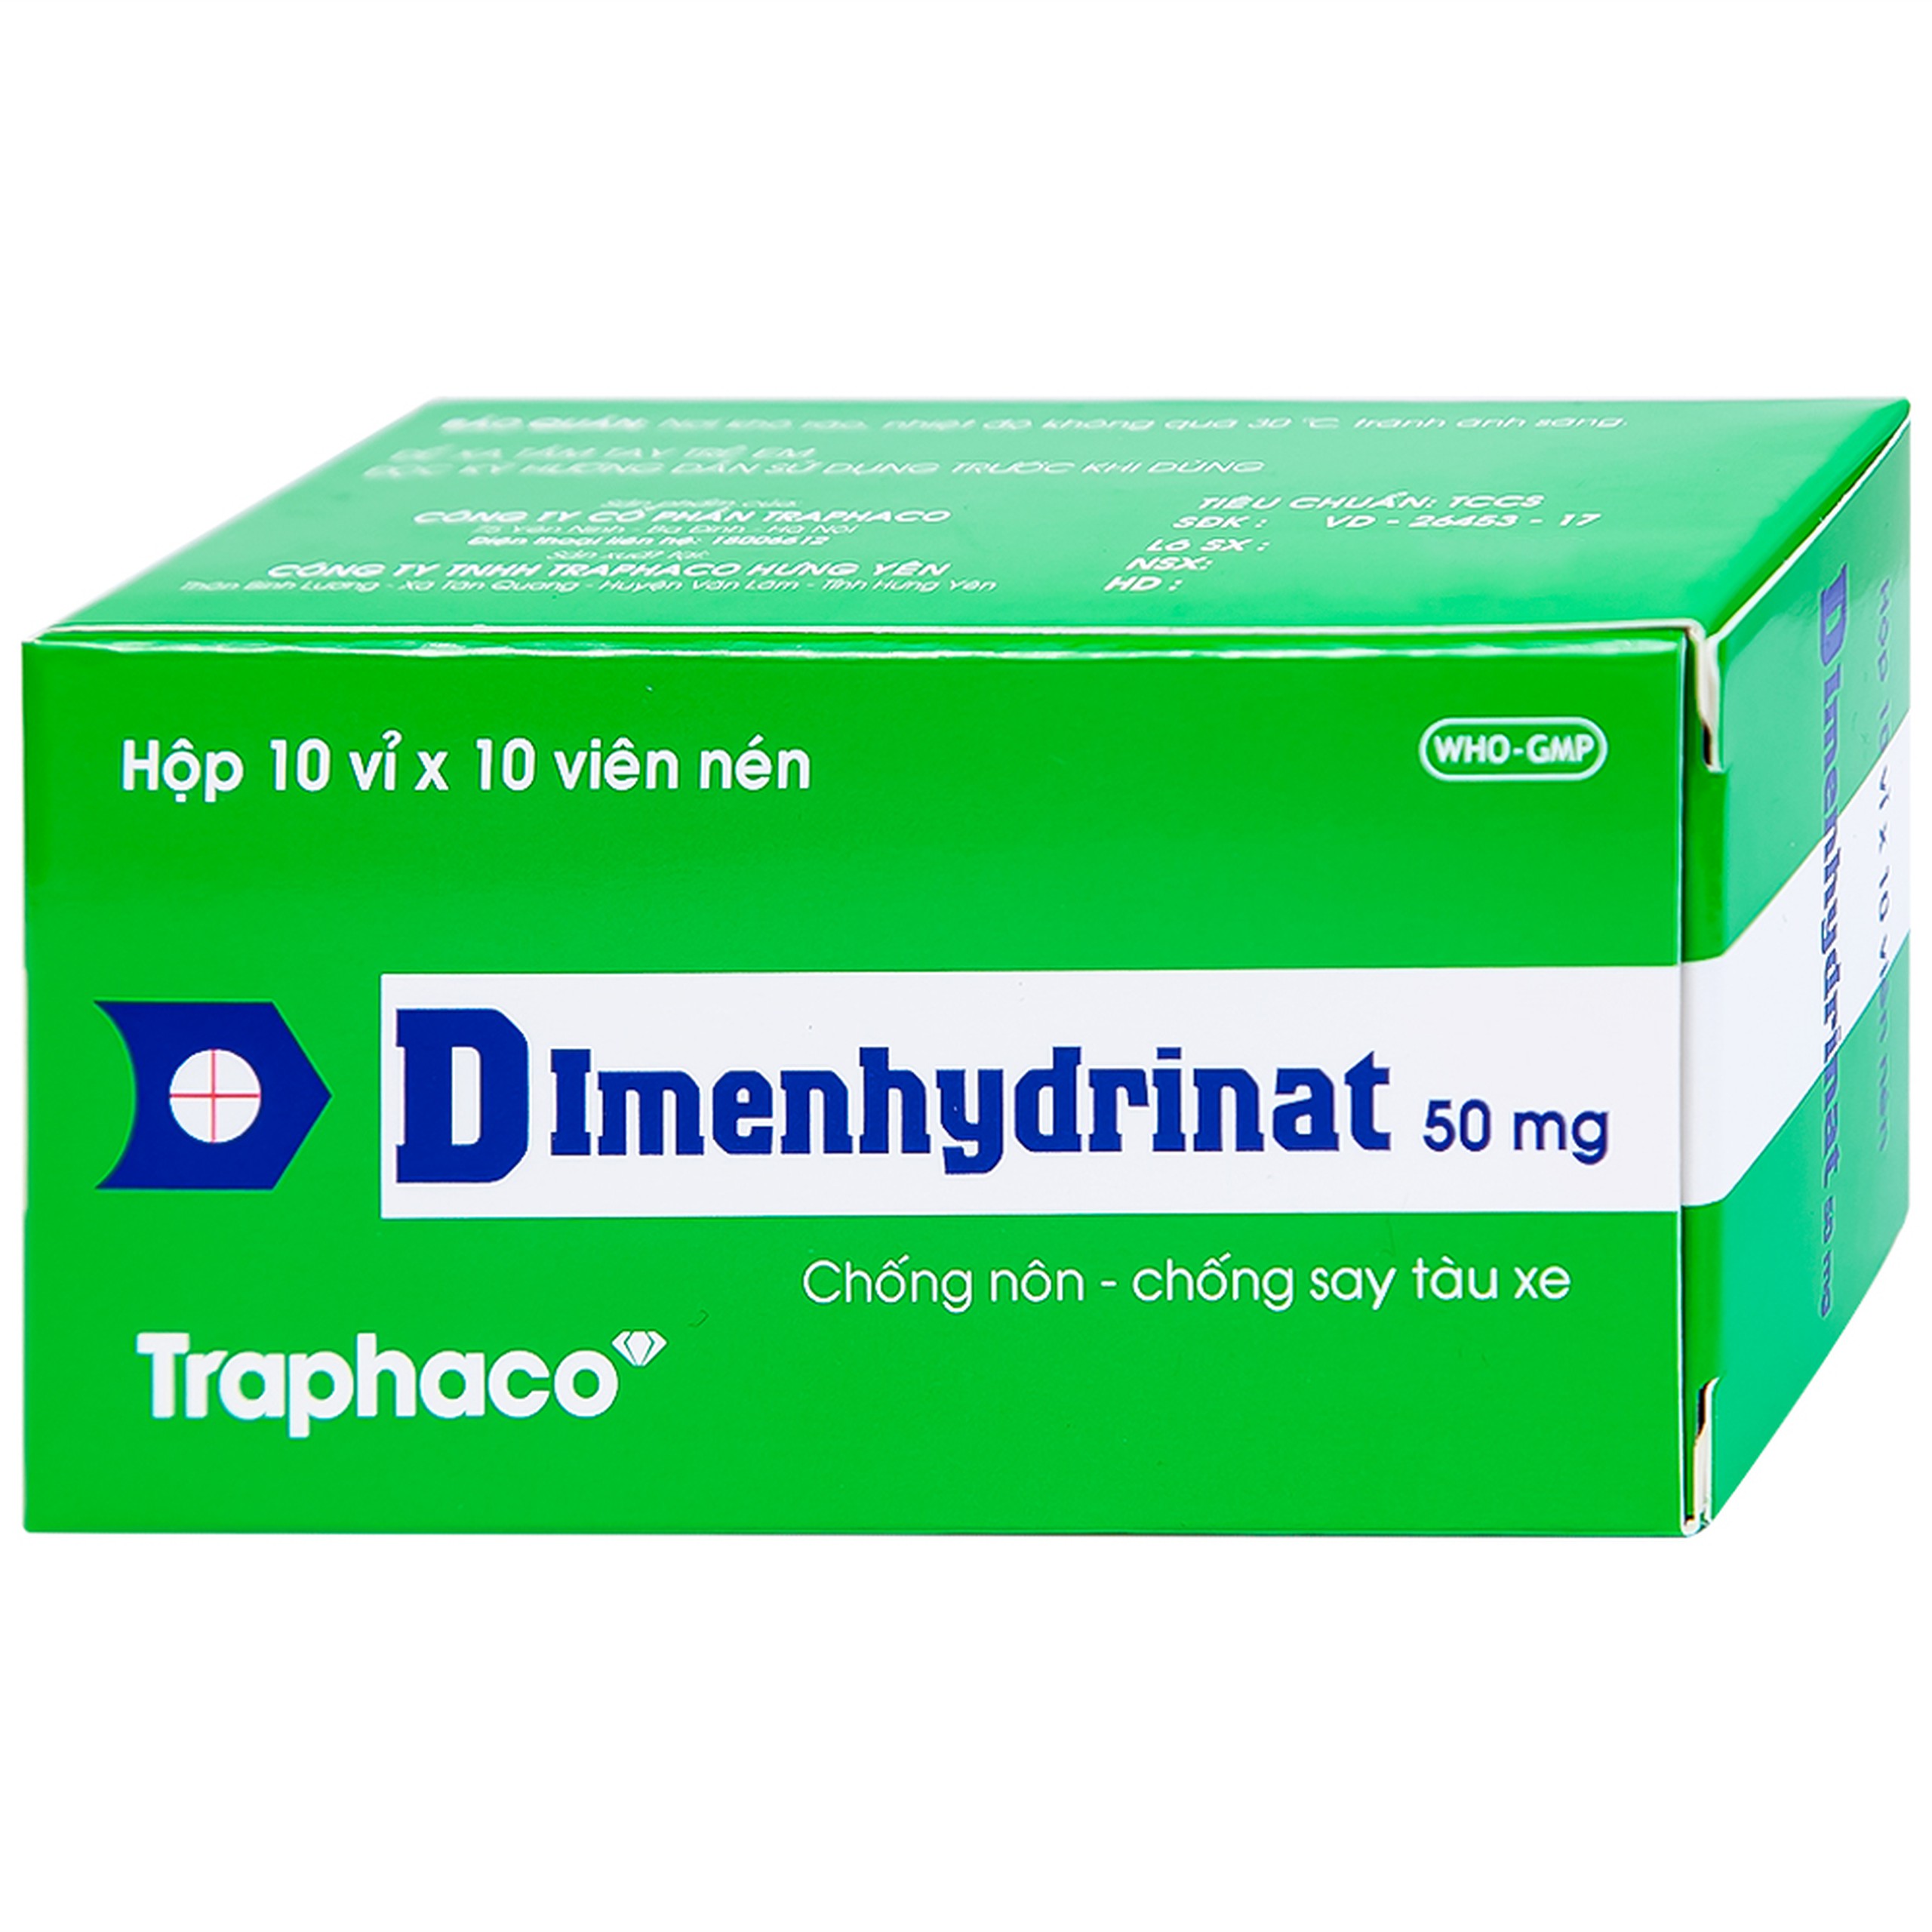 Thuốc Dimenhydrinat 50mg Traphaco chống nôn, chống say tàu xe (10 vỉ x 10 viên)